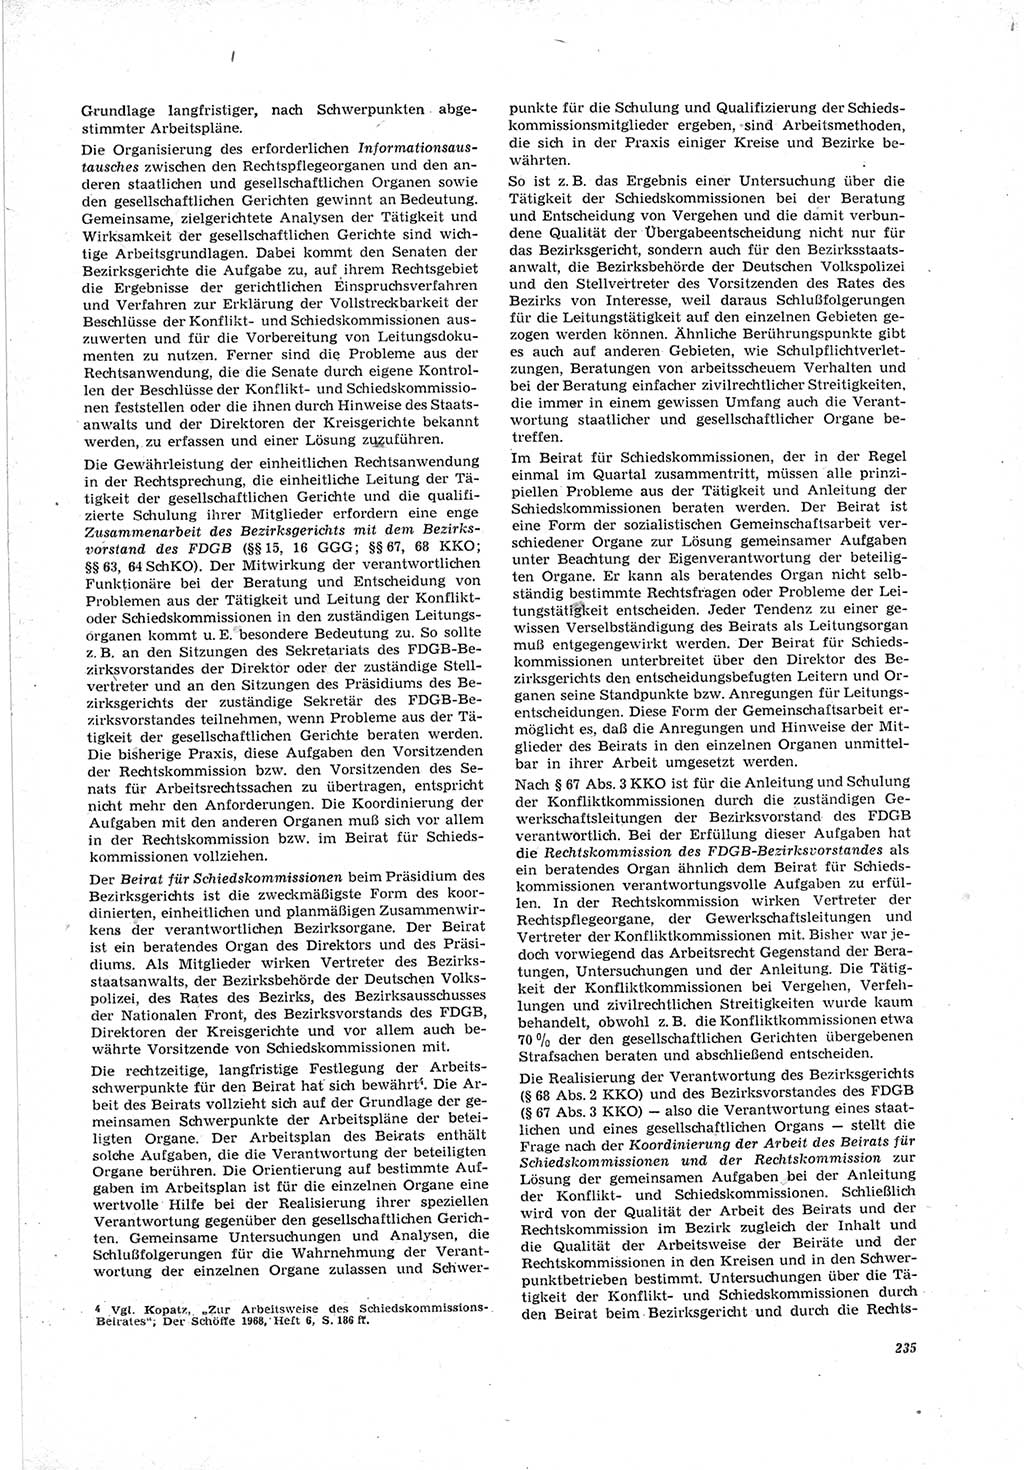 Neue Justiz (NJ), Zeitschrift für Recht und Rechtswissenschaft [Deutsche Demokratische Republik (DDR)], 23. Jahrgang 1969, Seite 235 (NJ DDR 1969, S. 235)